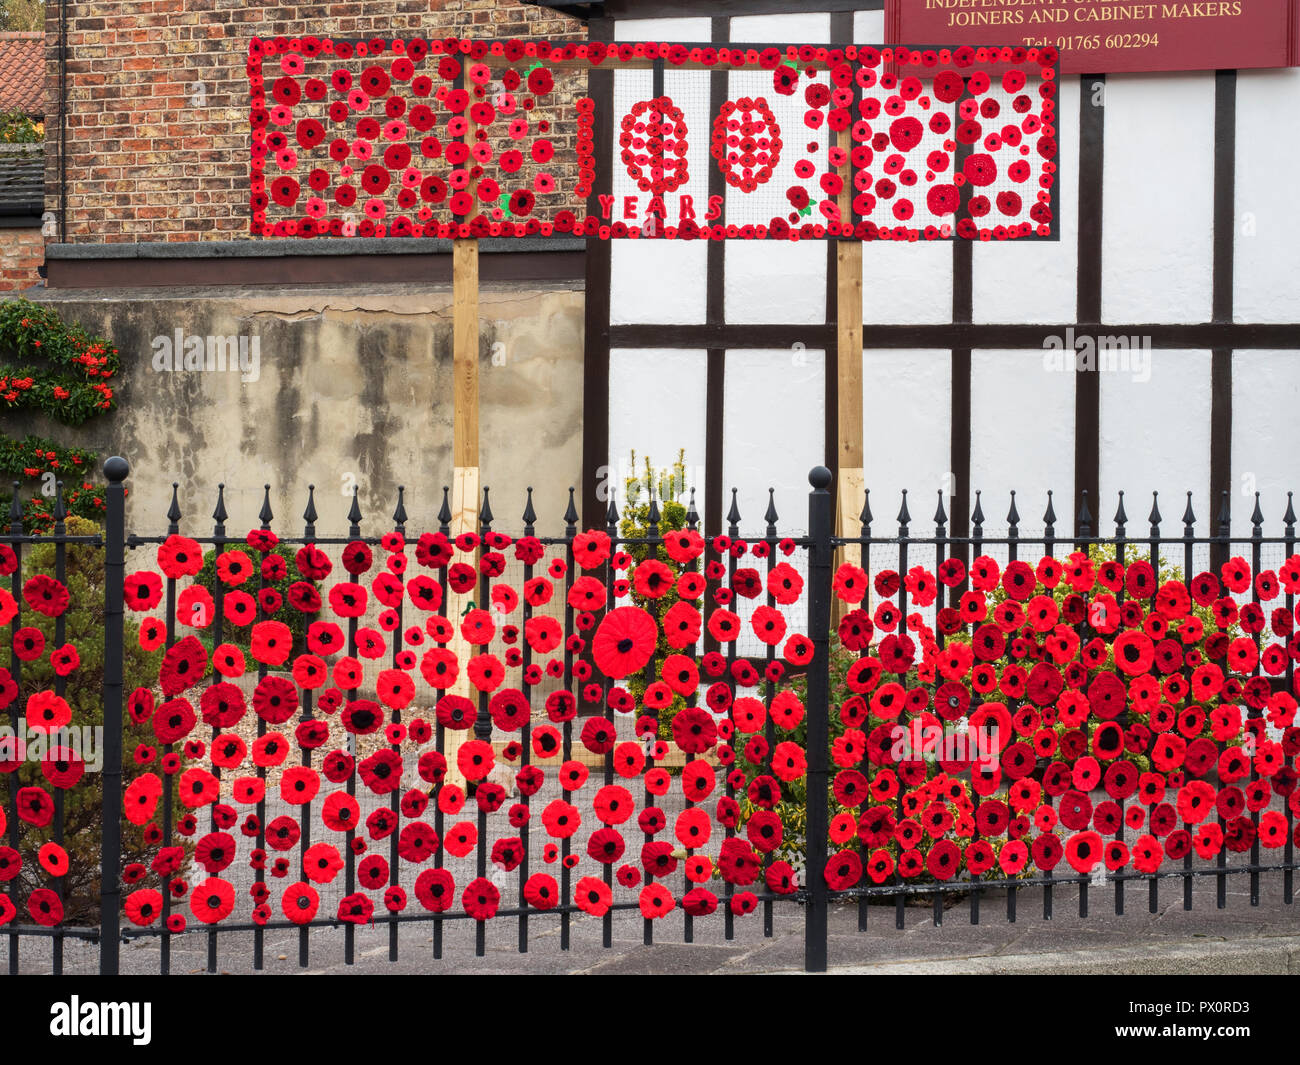 Affichage du pavot à mailles commémorant 100 ans depuis la fin de la Première Guerre mondiale, Ripon Yorkshire Angleterre Banque D'Images